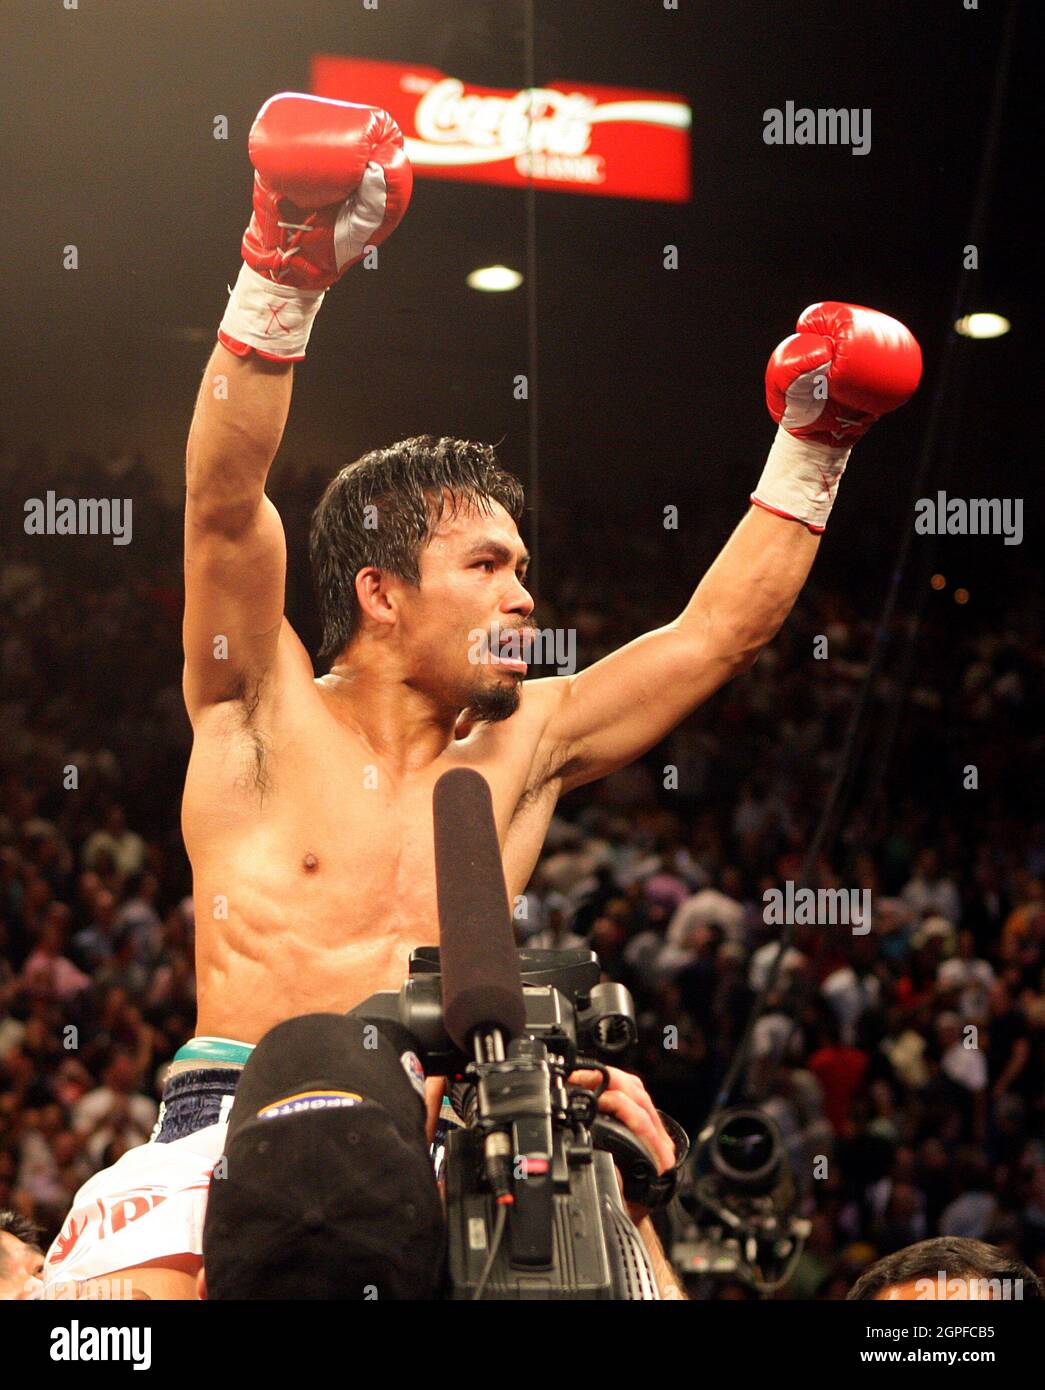 Aktenfoto vom 02-05-2009 von Manny Pacquiao wird hochgehalten, nachdem er Ricky Hatton während des Light Welterweight-Kampfes im MGM Grand, Las Vegas, USA, geschlagen hatte. Ausgabedatum: Mittwoch, 29. September 2021. Stockfoto